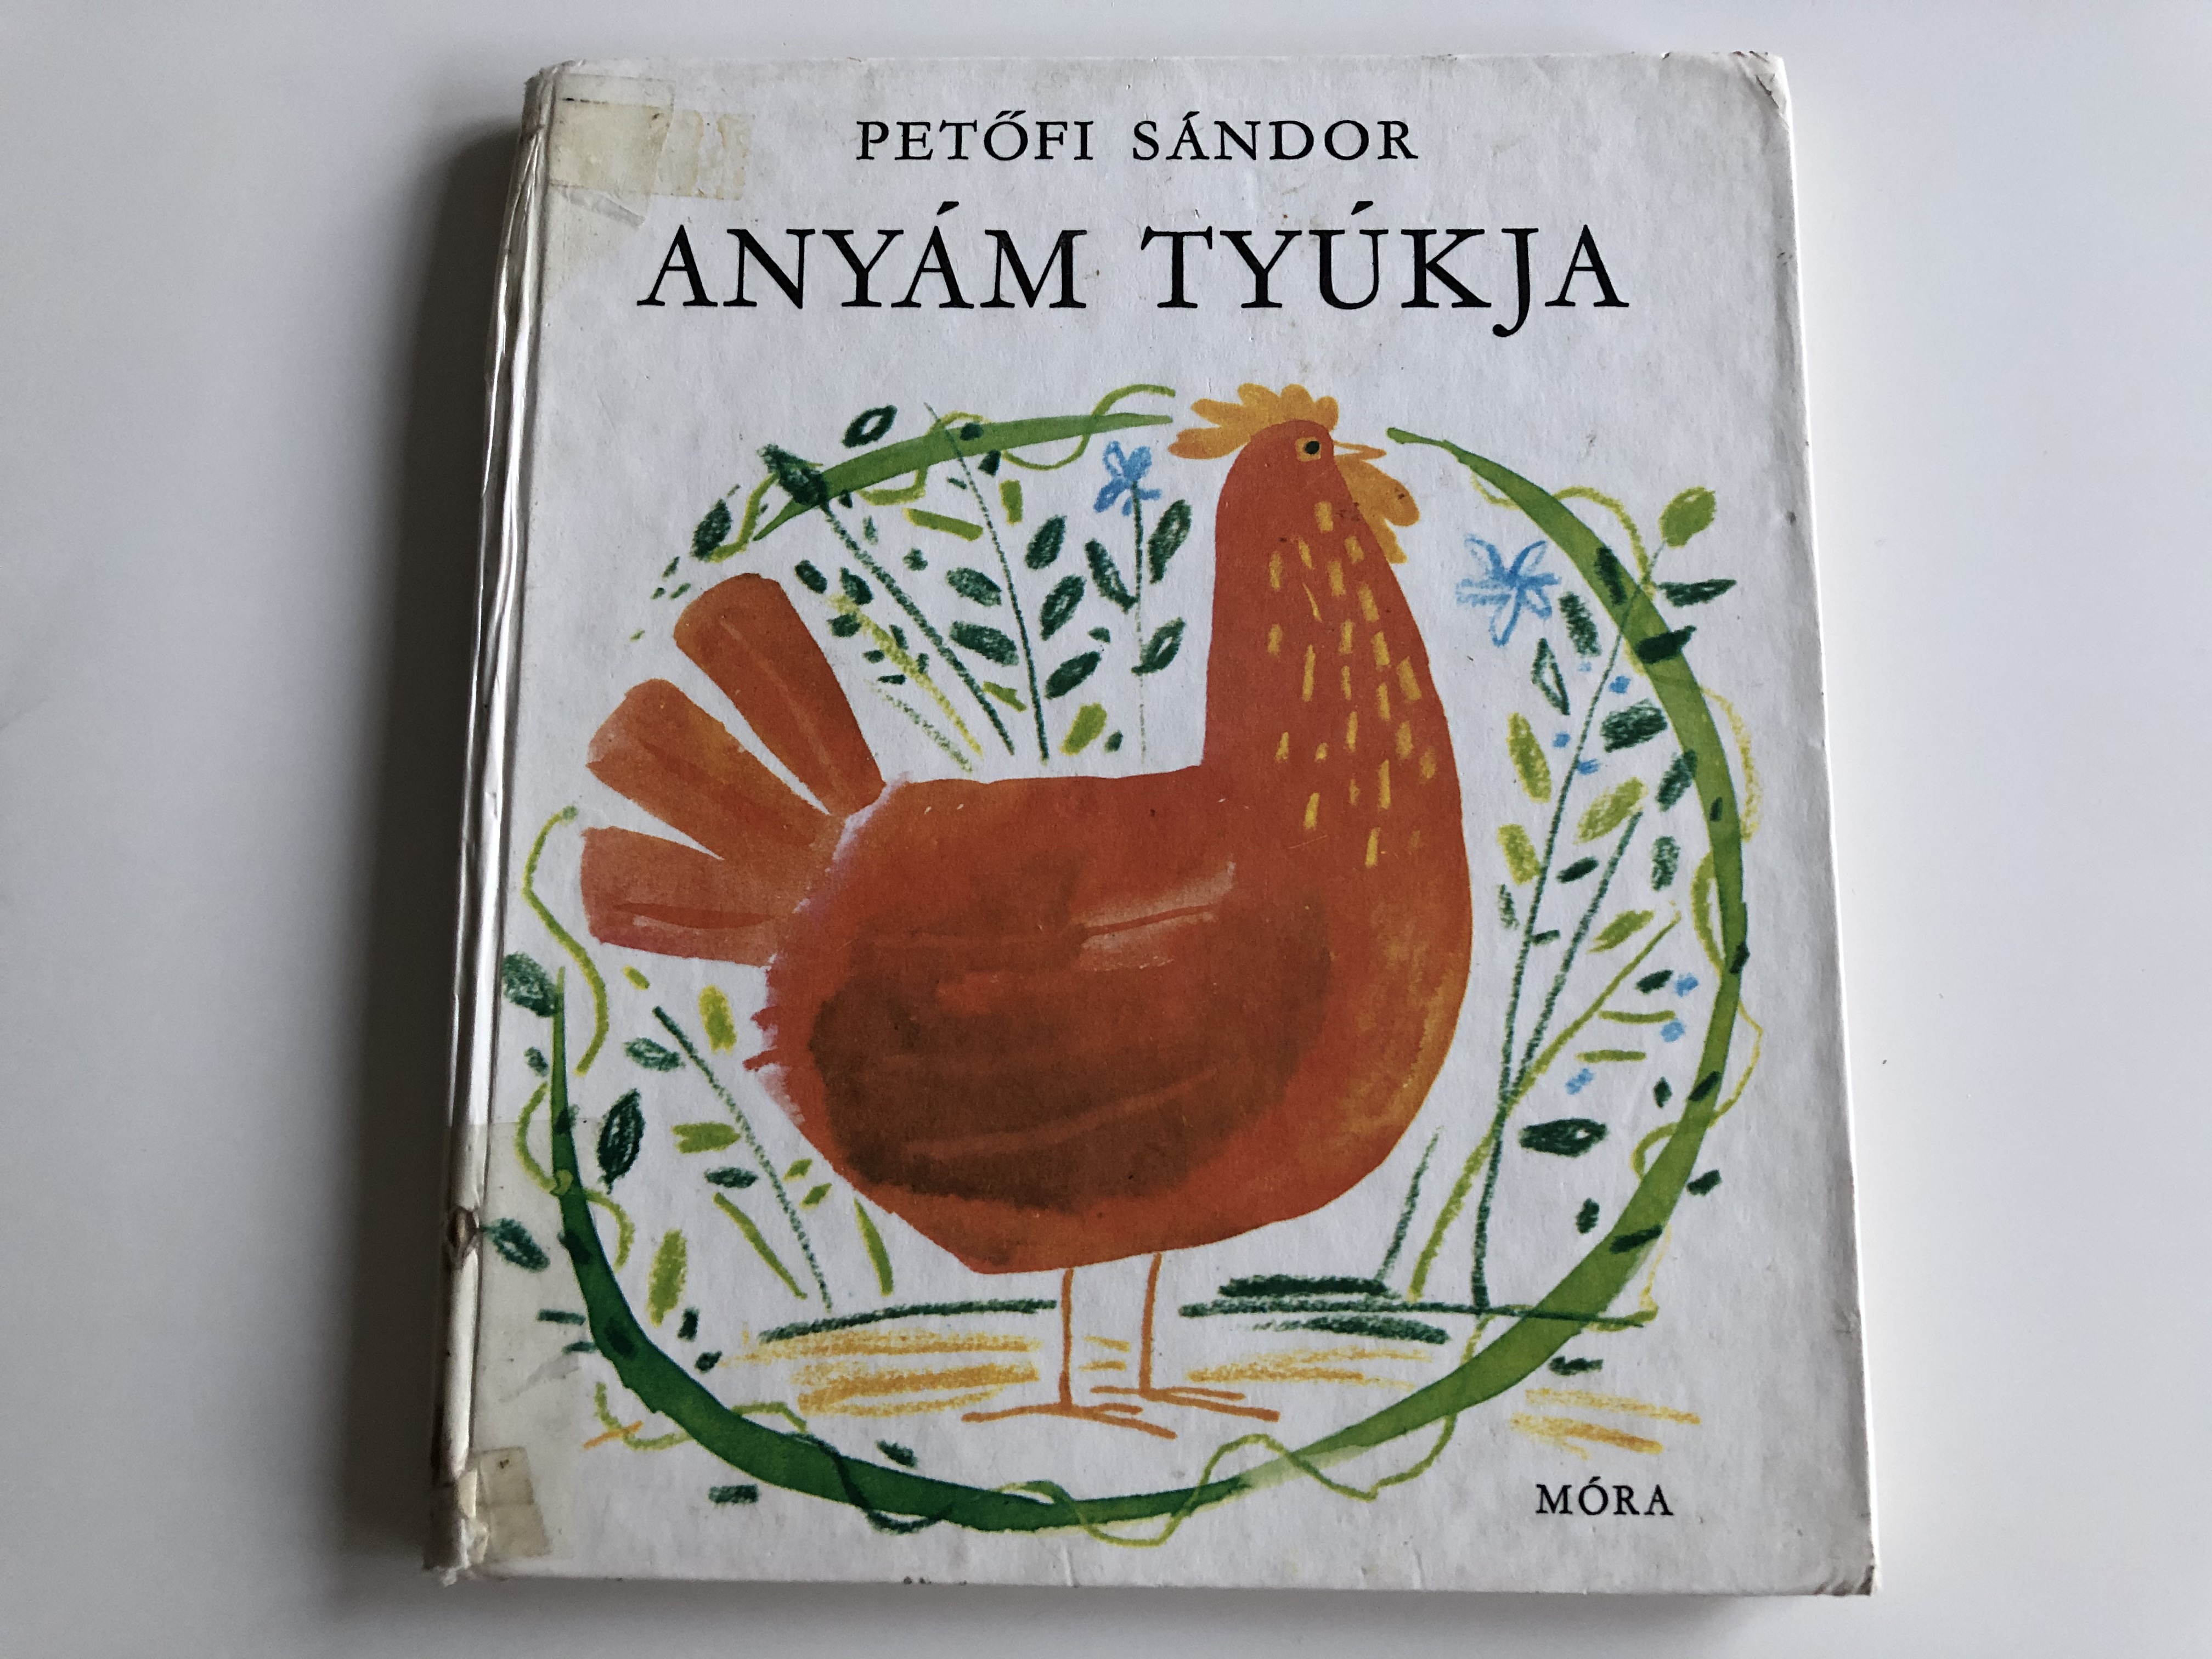 Anyám Tyúkja by Petőfi Sándor - Hungarian classic poetry 1.JPG